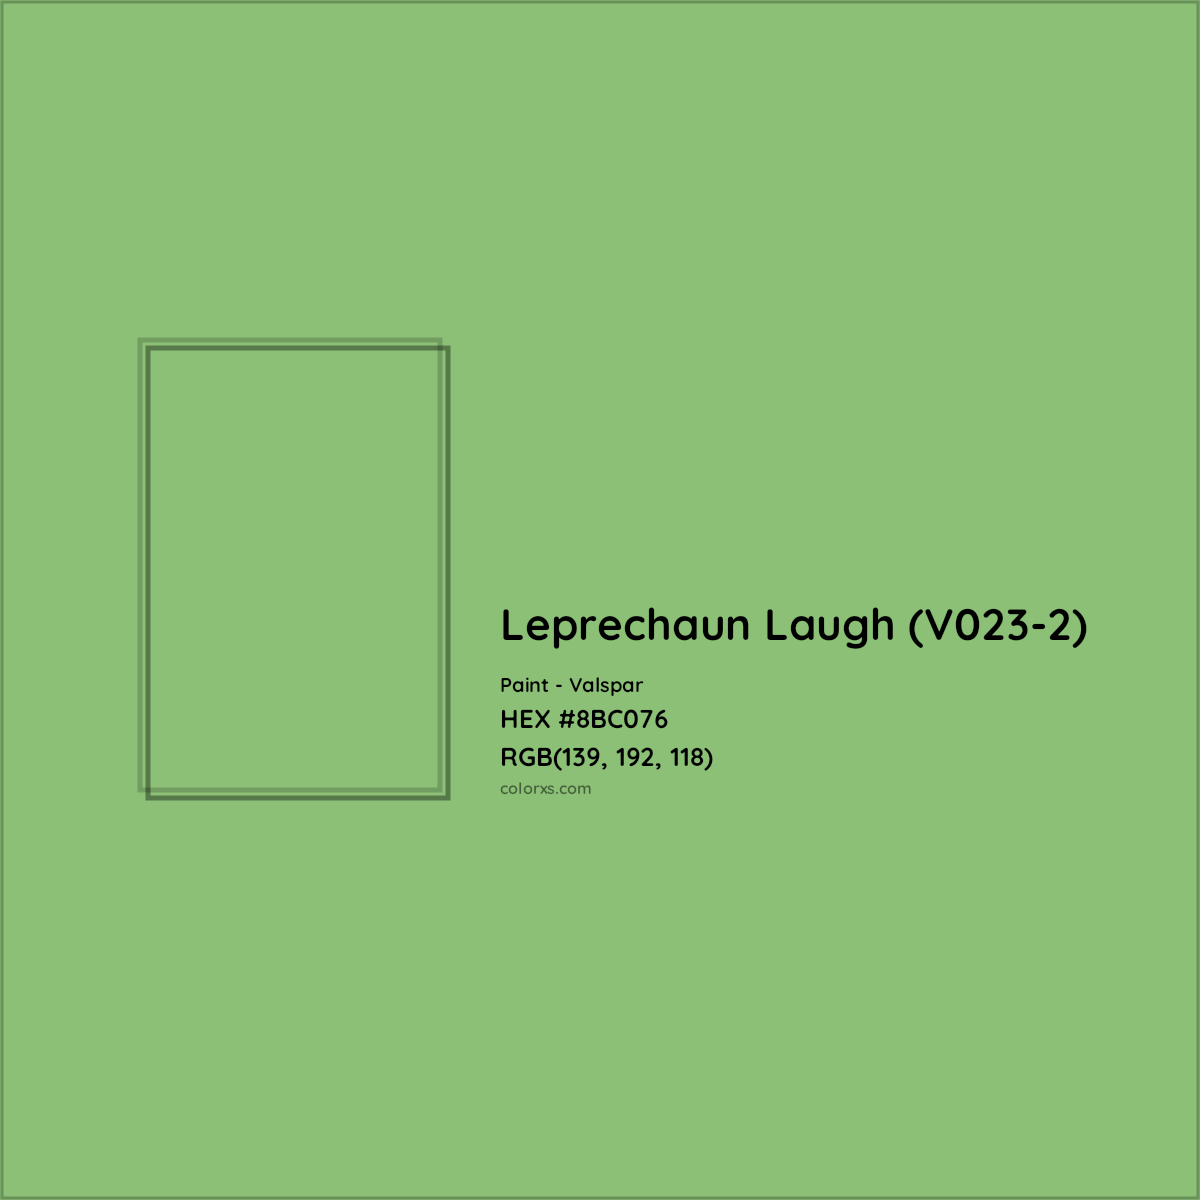 HEX #8BC076 Leprechaun Laugh (V023-2) Paint Valspar - Color Code